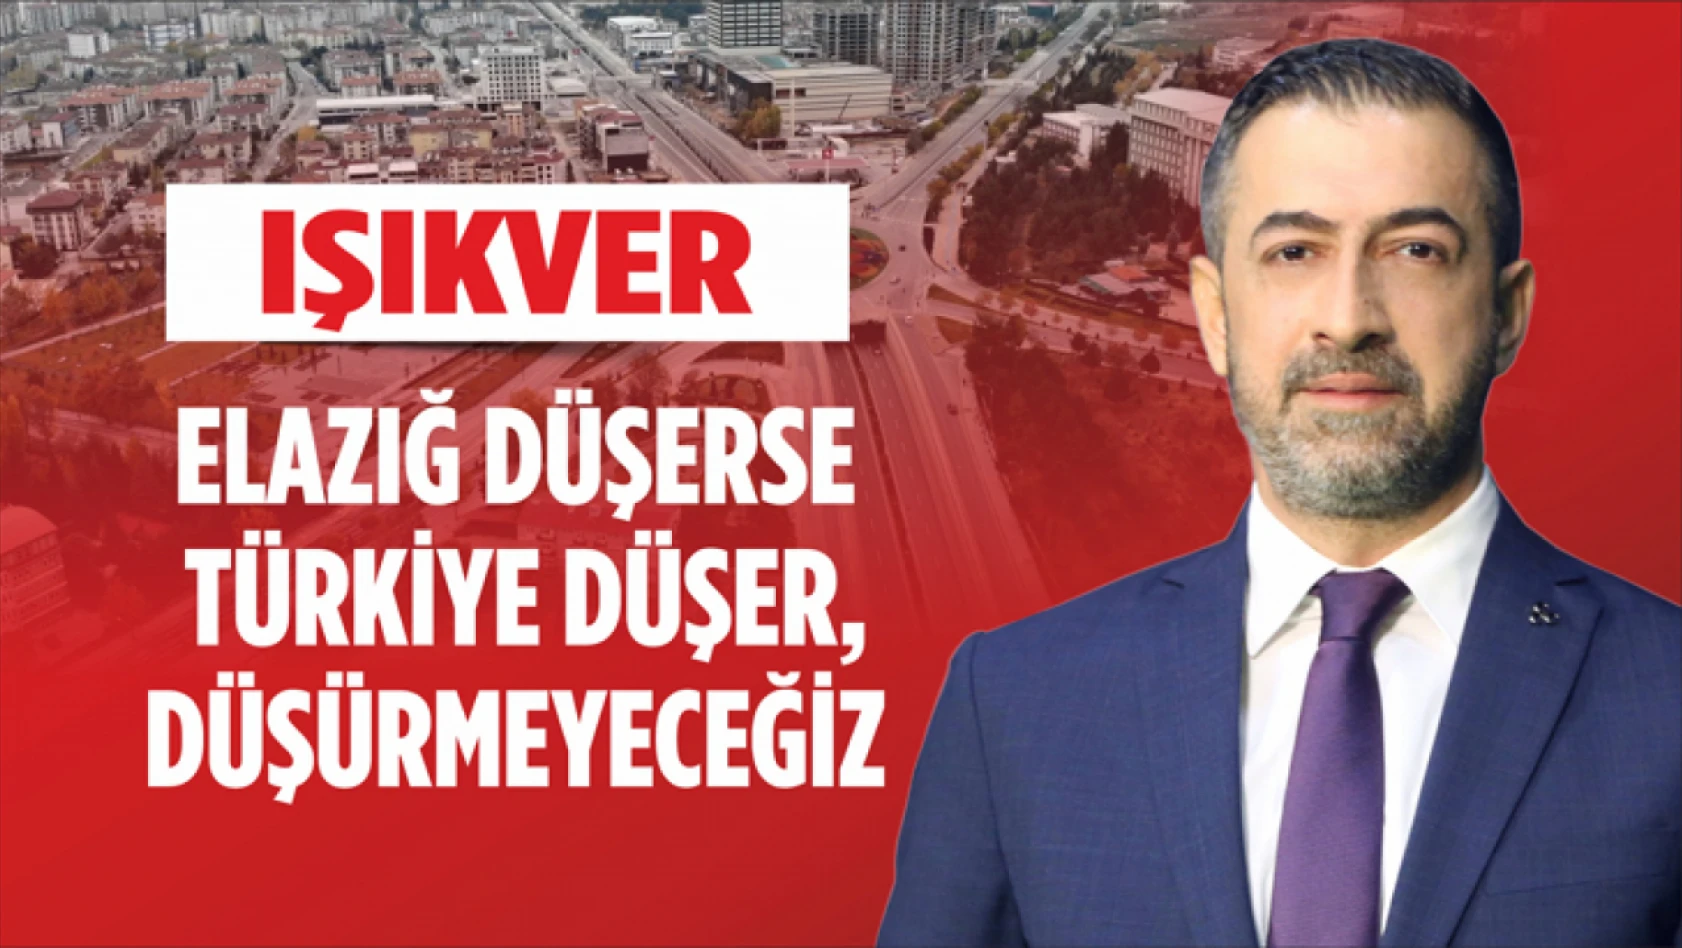 Işıkver,  'Elazığ Düşerse Türkiye Düşer, Düşürmeyeceğiz'